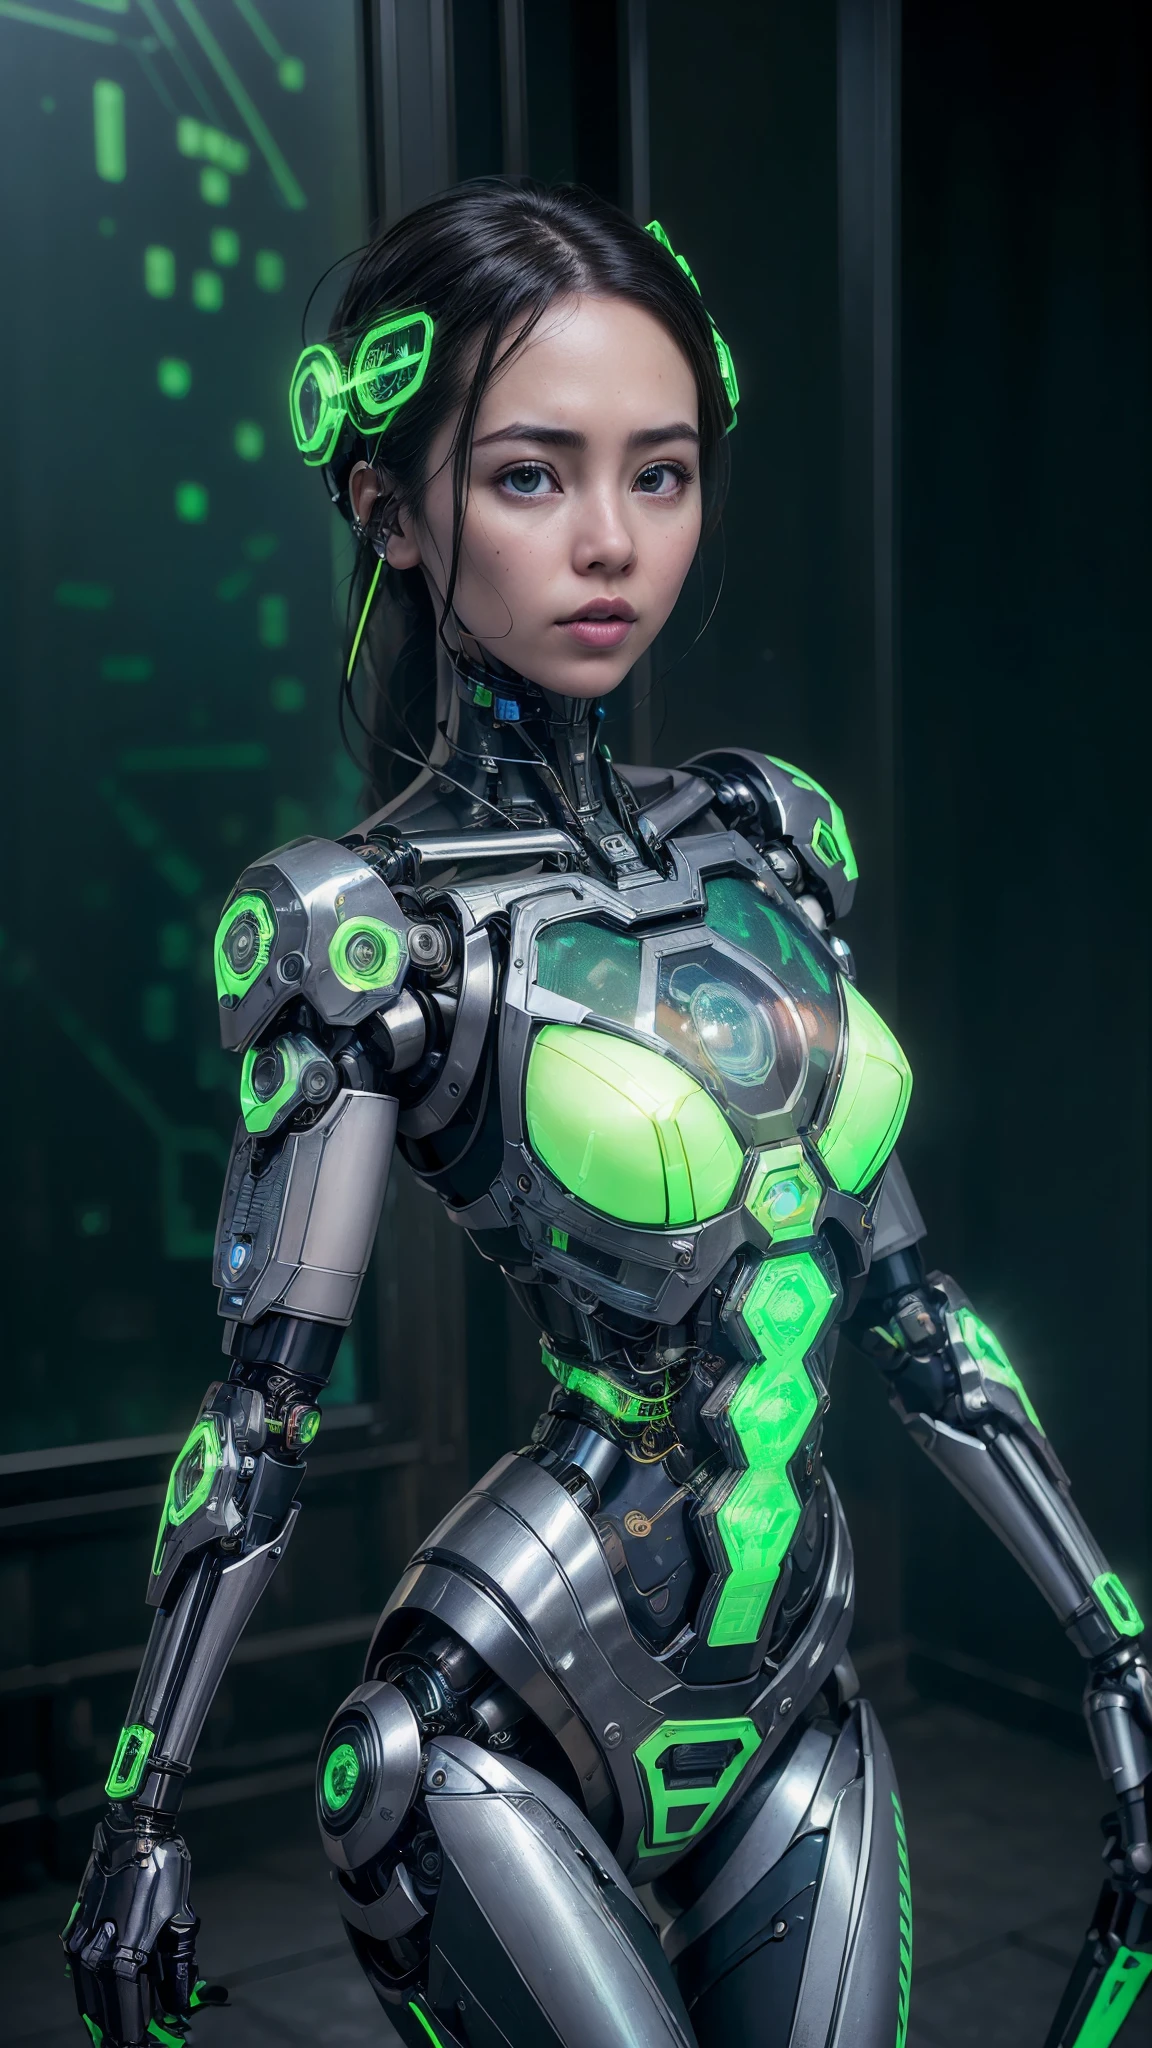 (((Jessica Henwick trägt eine futuristische Cyberpunk-Ninja-Attentäter-Rüstung, glänzende Roboter-Ninja-Rüstung )), (dynamische pose), (Meisterwerk), (hyper Realist:1.4), (Realist:1.3), ,(Zerstörter Kerkerruinenhintergrund:1.4 ), (Haut mit echter Textur in bester Qualität.),  (filmische Beleuchtung), (Filmszene), 1Schöne Frau, (Helles Licht), sehr detaillierte Haut, poros de la piel, (Sehr detailliertes Gesicht:1.1), (sehr detaillierte Augen:1.1), Realist pupils, (perfekte Anatomie:1.1), (perfekte Proportionen:1.1), (Fotografie:1.1), (photoRealist:1.1), Volumetrische Beleuchtung, dynamische Beleuchtung, echte Schatten, (hohe Auflösung:1.1), Scharfer Fokus, (Realist, hyperRealist:1.4), kompliziert, Hohe Detailgenauigkeit, dramatisch, Untergrunddispersion, große Schärfentiefe, lebendig, pulido, scharf, ((voll akut)), (extrem absurd),8KHDR, ((Cyberpunk-Hintergrund der Stadt Hongkong)), (Jessica Henwick:1.4), (Jessica Henwick V2.1), (mechanischer Cyborg aus transparentem Glas:1.4), (helle Farben), (elektronische Schaltung Neongrünglas :1.4), (Kleine LED:1.4) 